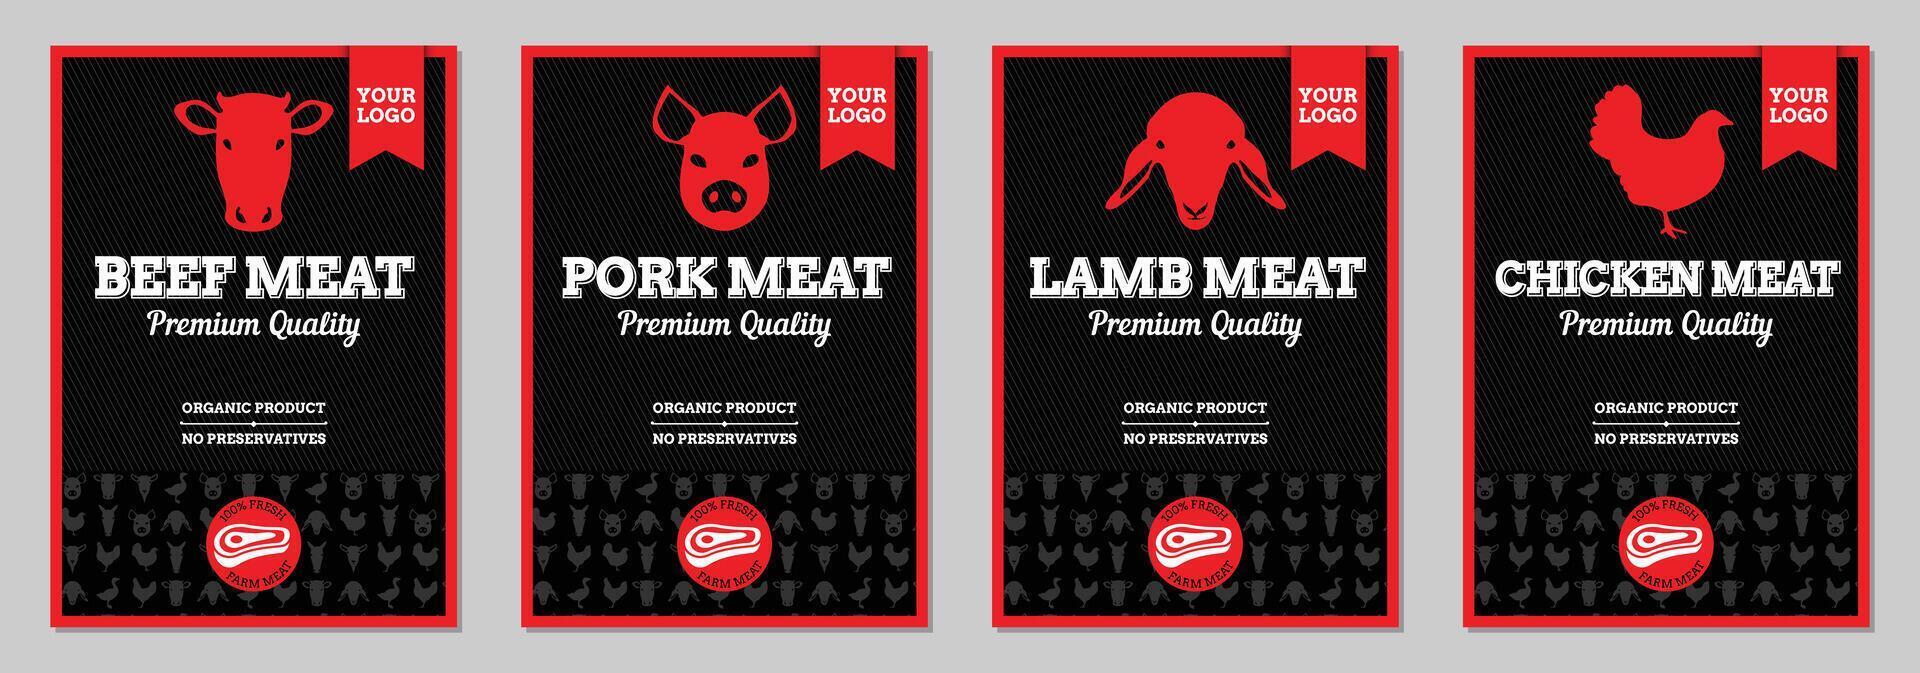 Rindfleisch, Schweinefleisch, Lamm und Hähnchen Fleisch Verpackung beschriftet Design vektor